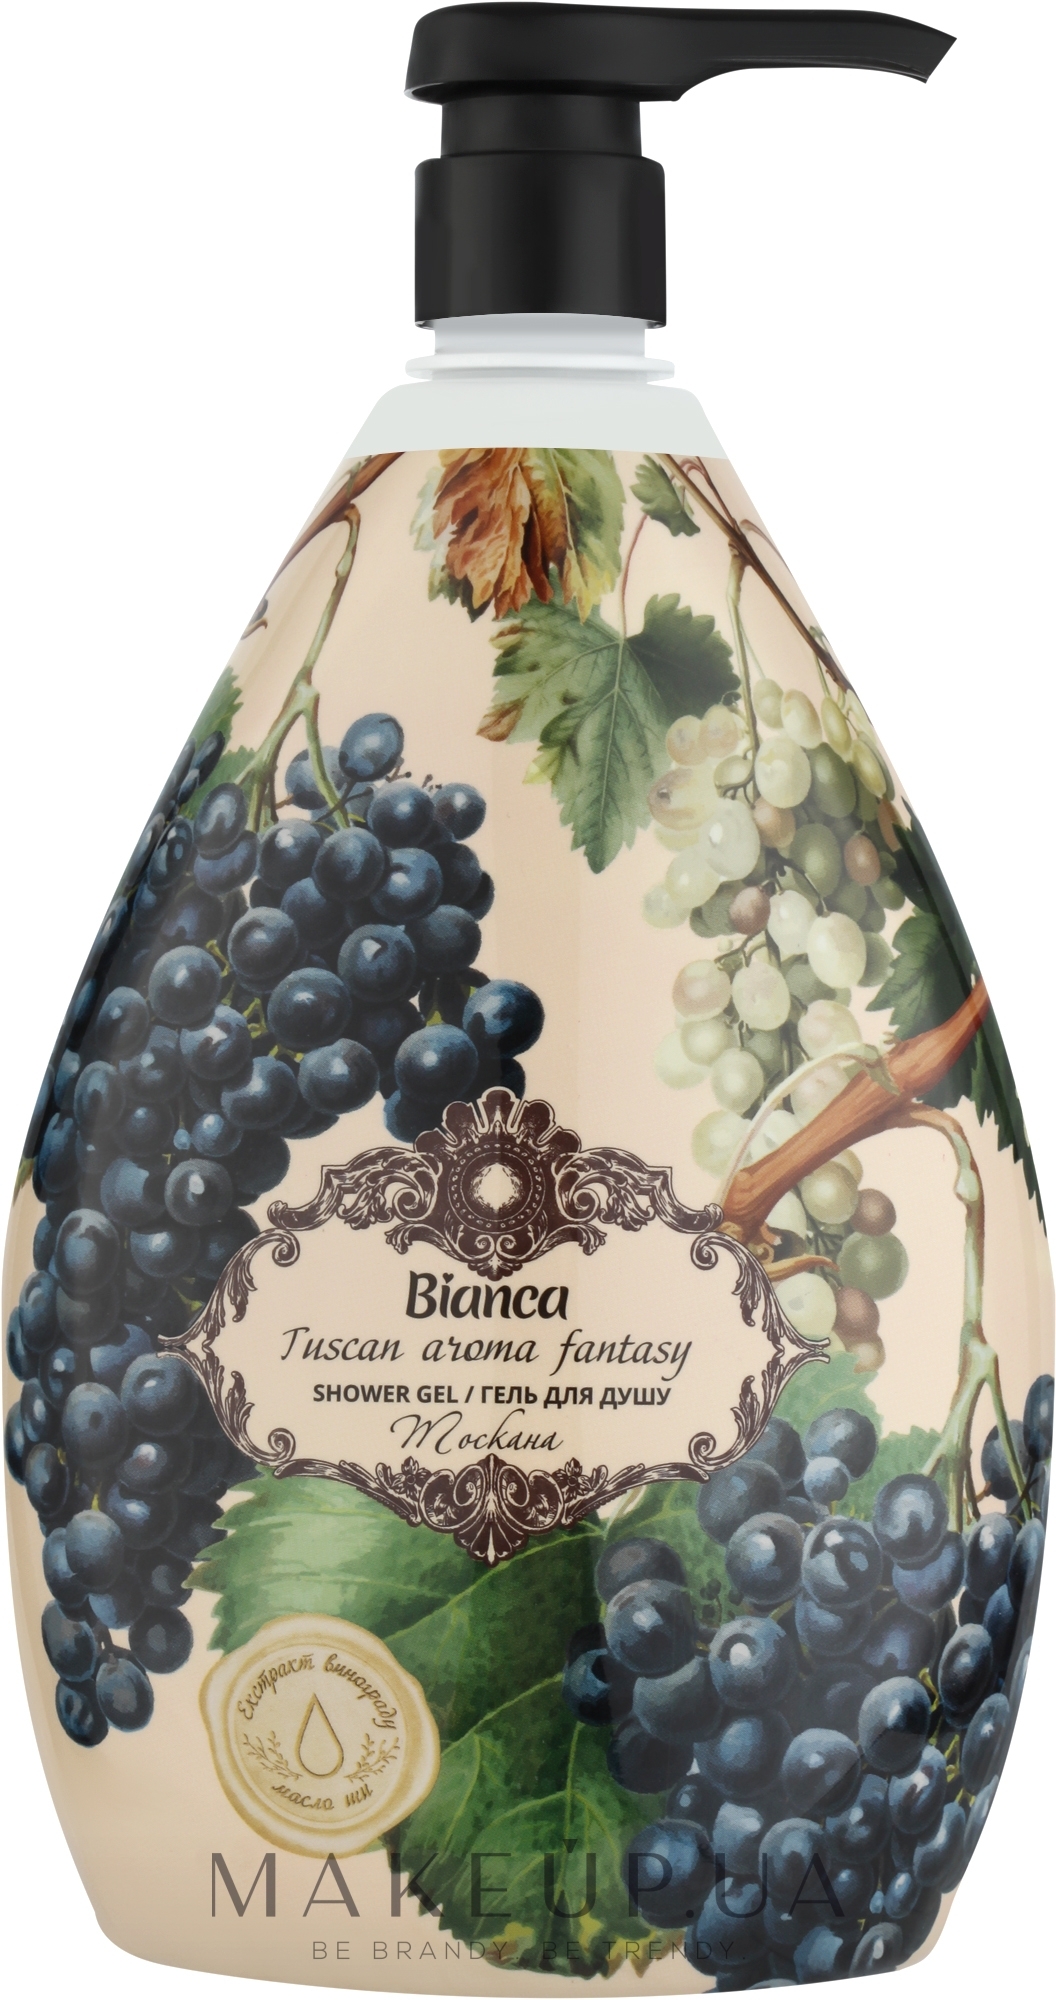 Гель для душа с экстрактом винограда и масла Ши - Bianca Tuscan Aroma Fantasy Shower Gel — фото 1000ml